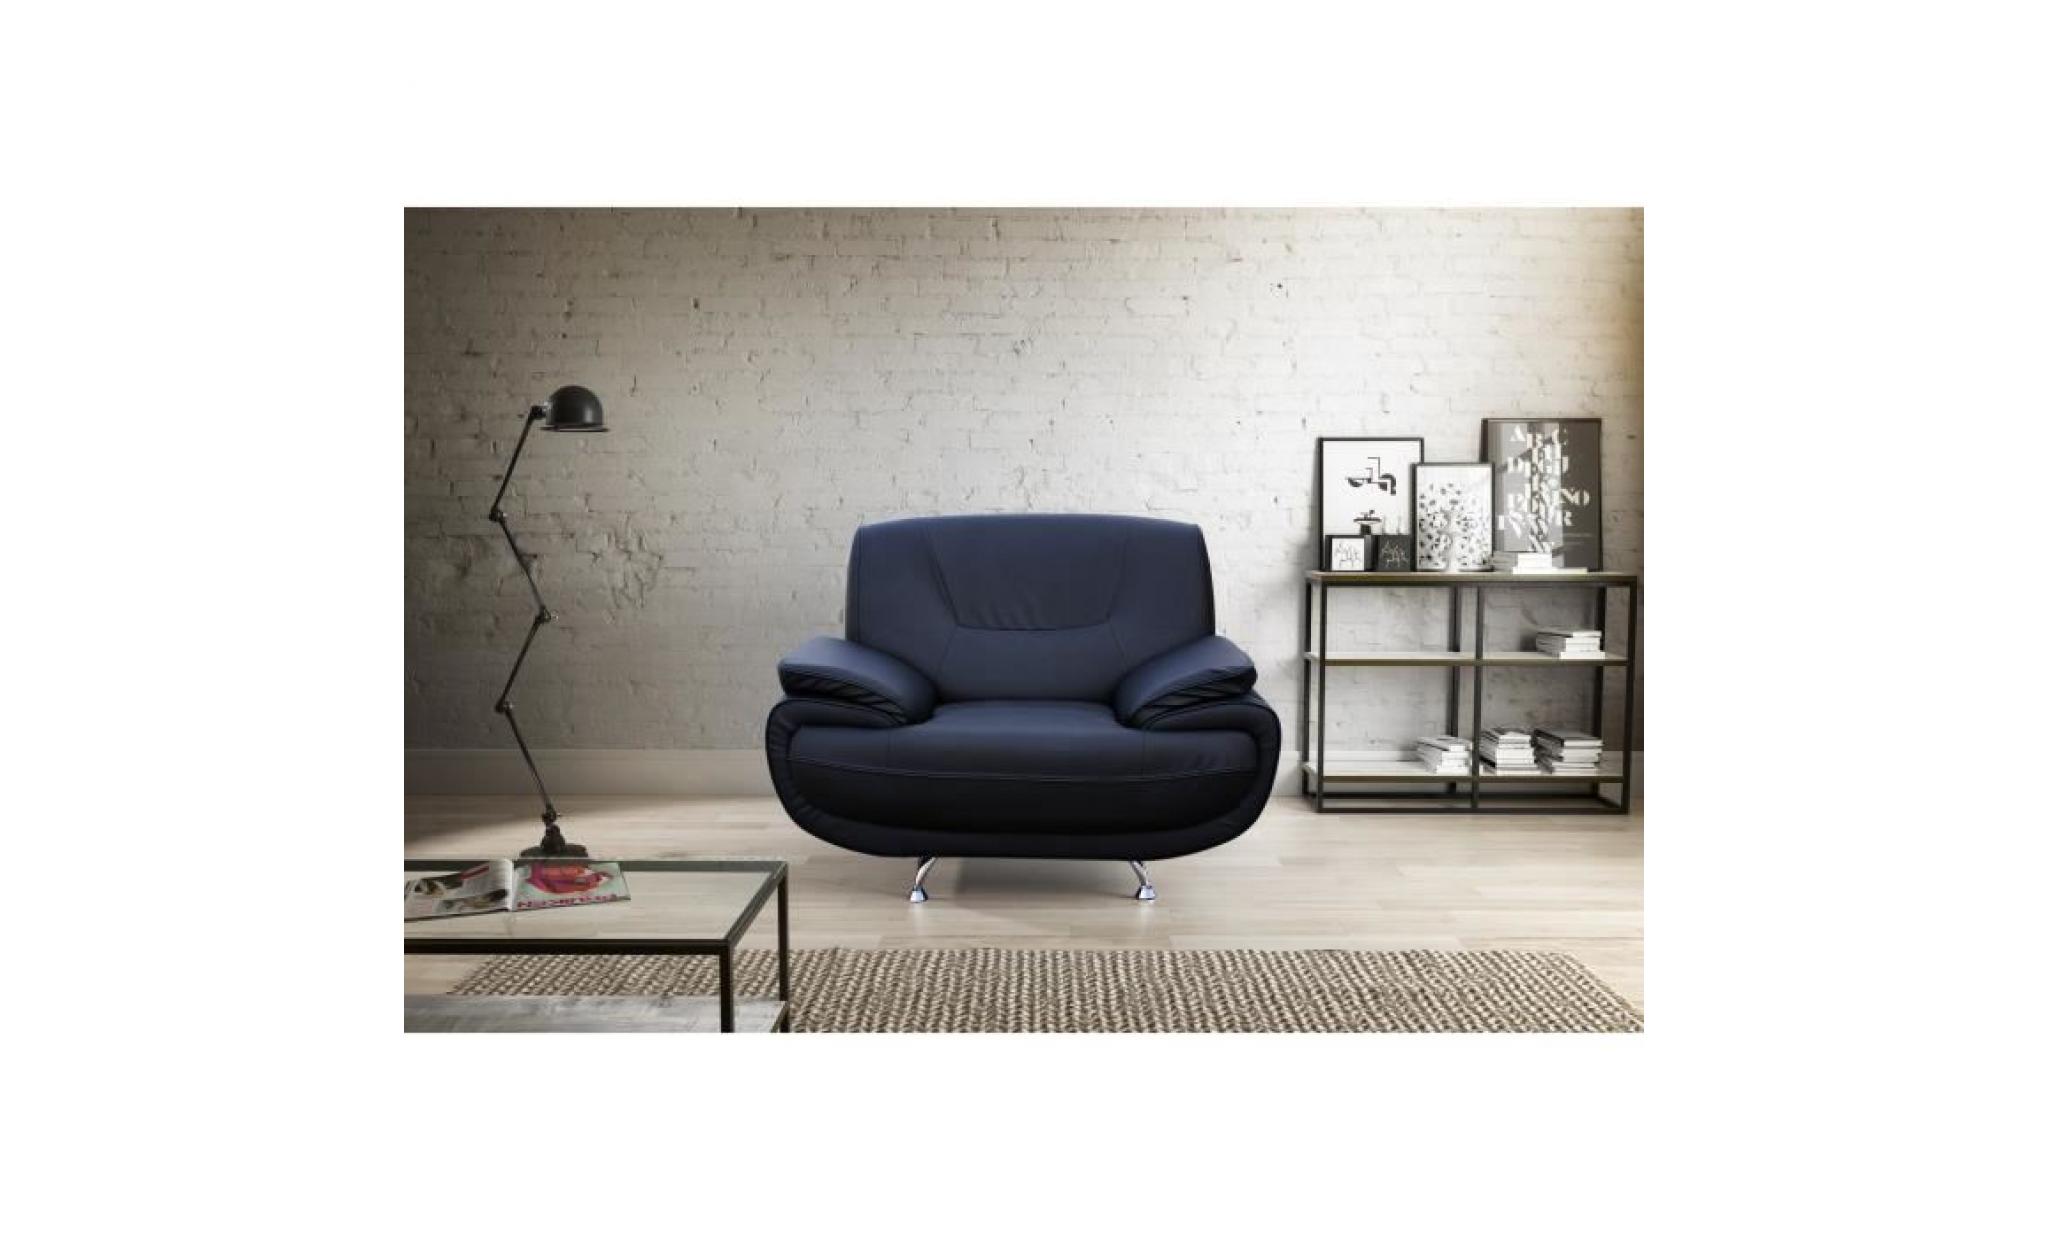 spacio fauteuil   simili noir   contemporain   l 134 x p 86 cm pas cher